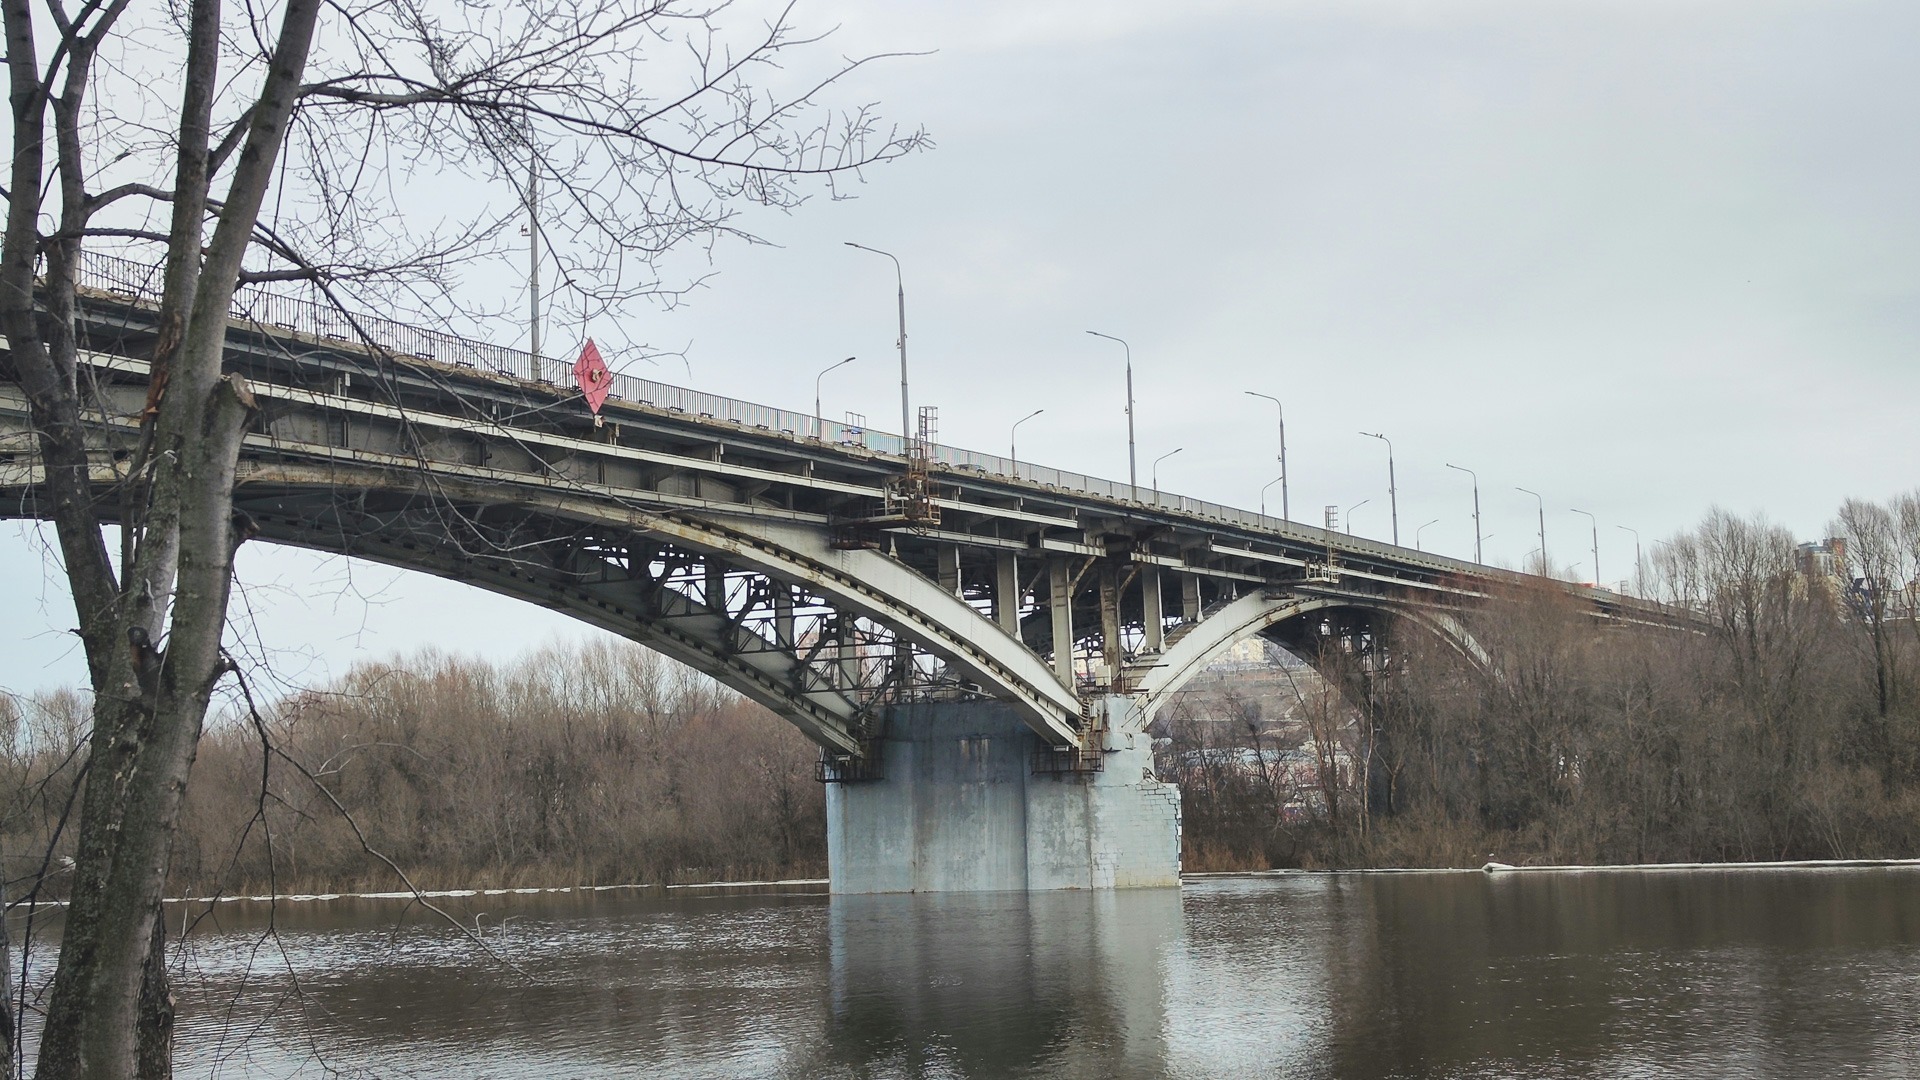 Истинная причина обрушения моста в Приморье — прокуратура возбудила дело о халатности